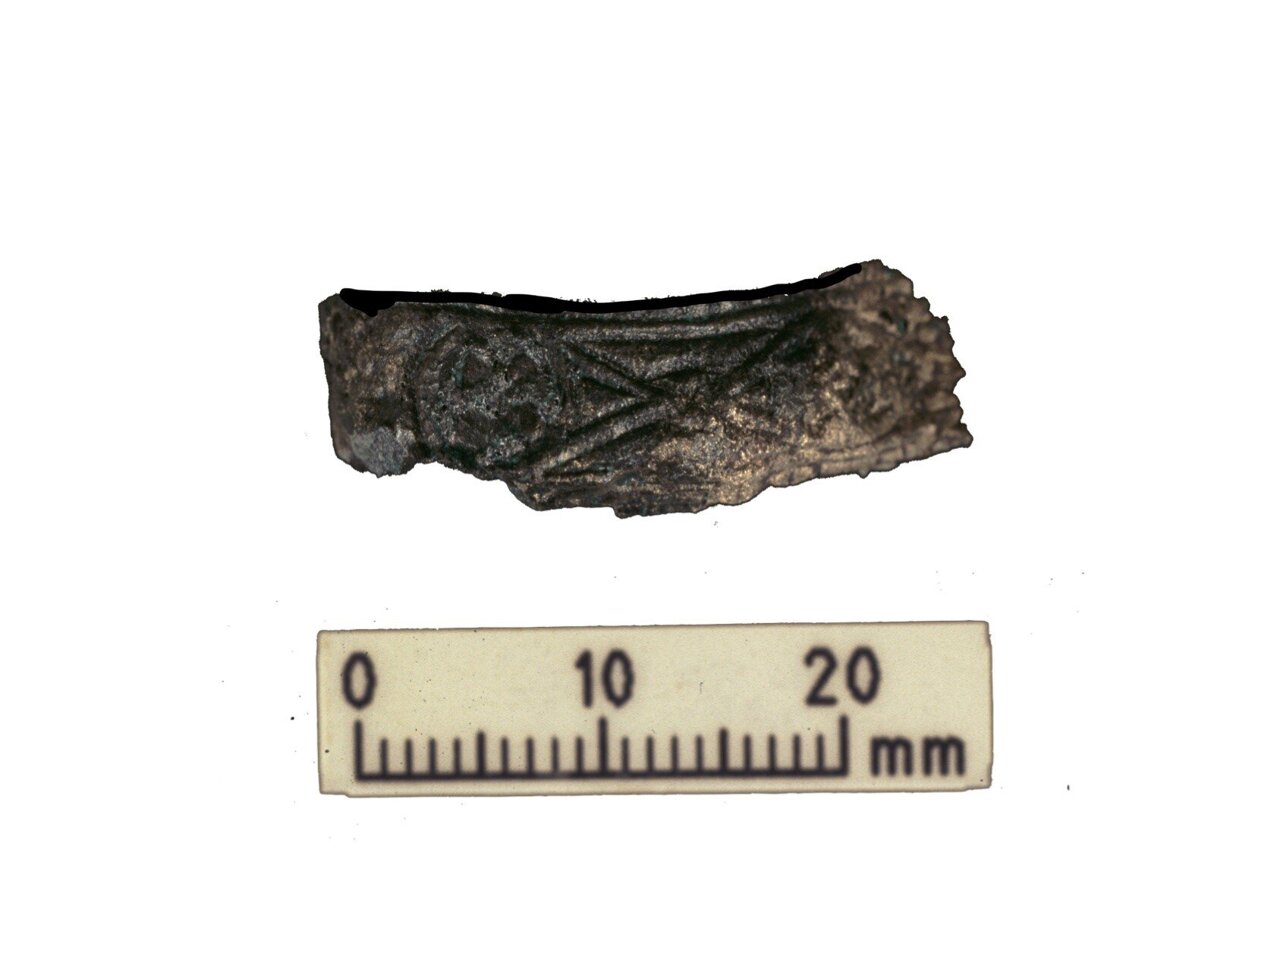 Ukrašena drška mača vikinškog ratnika. Mač je pronađen u istoj grobnici kao i ljudski i životinjski ostaci analizirani tijekom najnovijeg istraživanja.